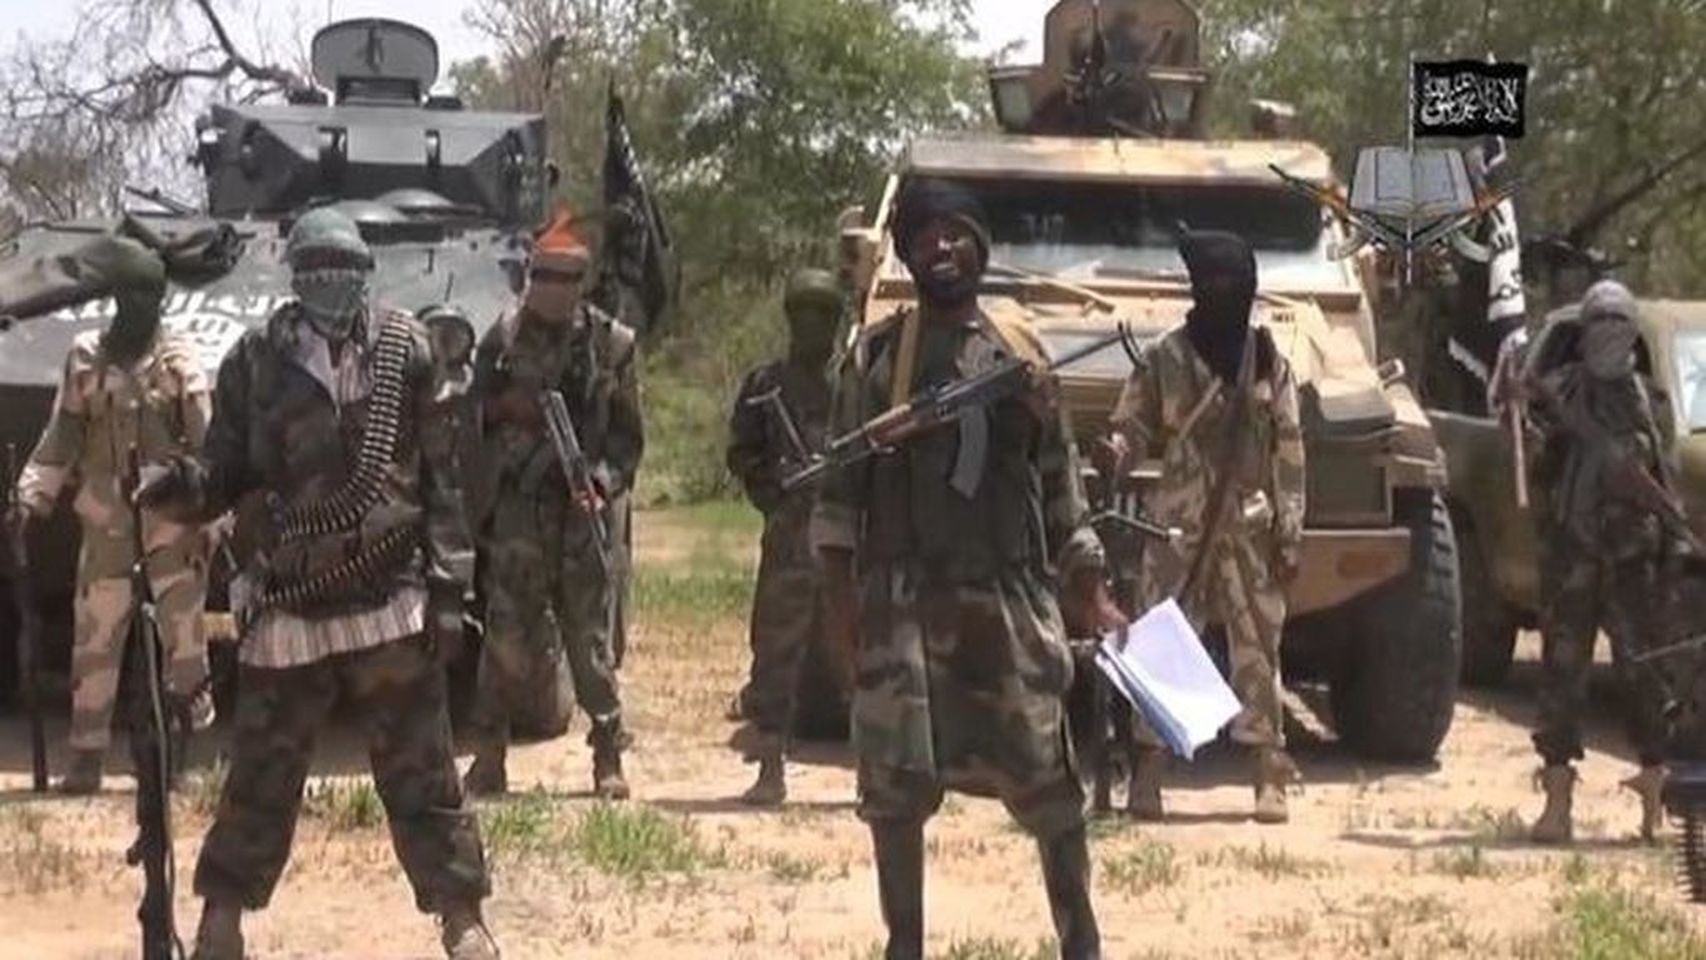 Milicianos de Boko Haram.